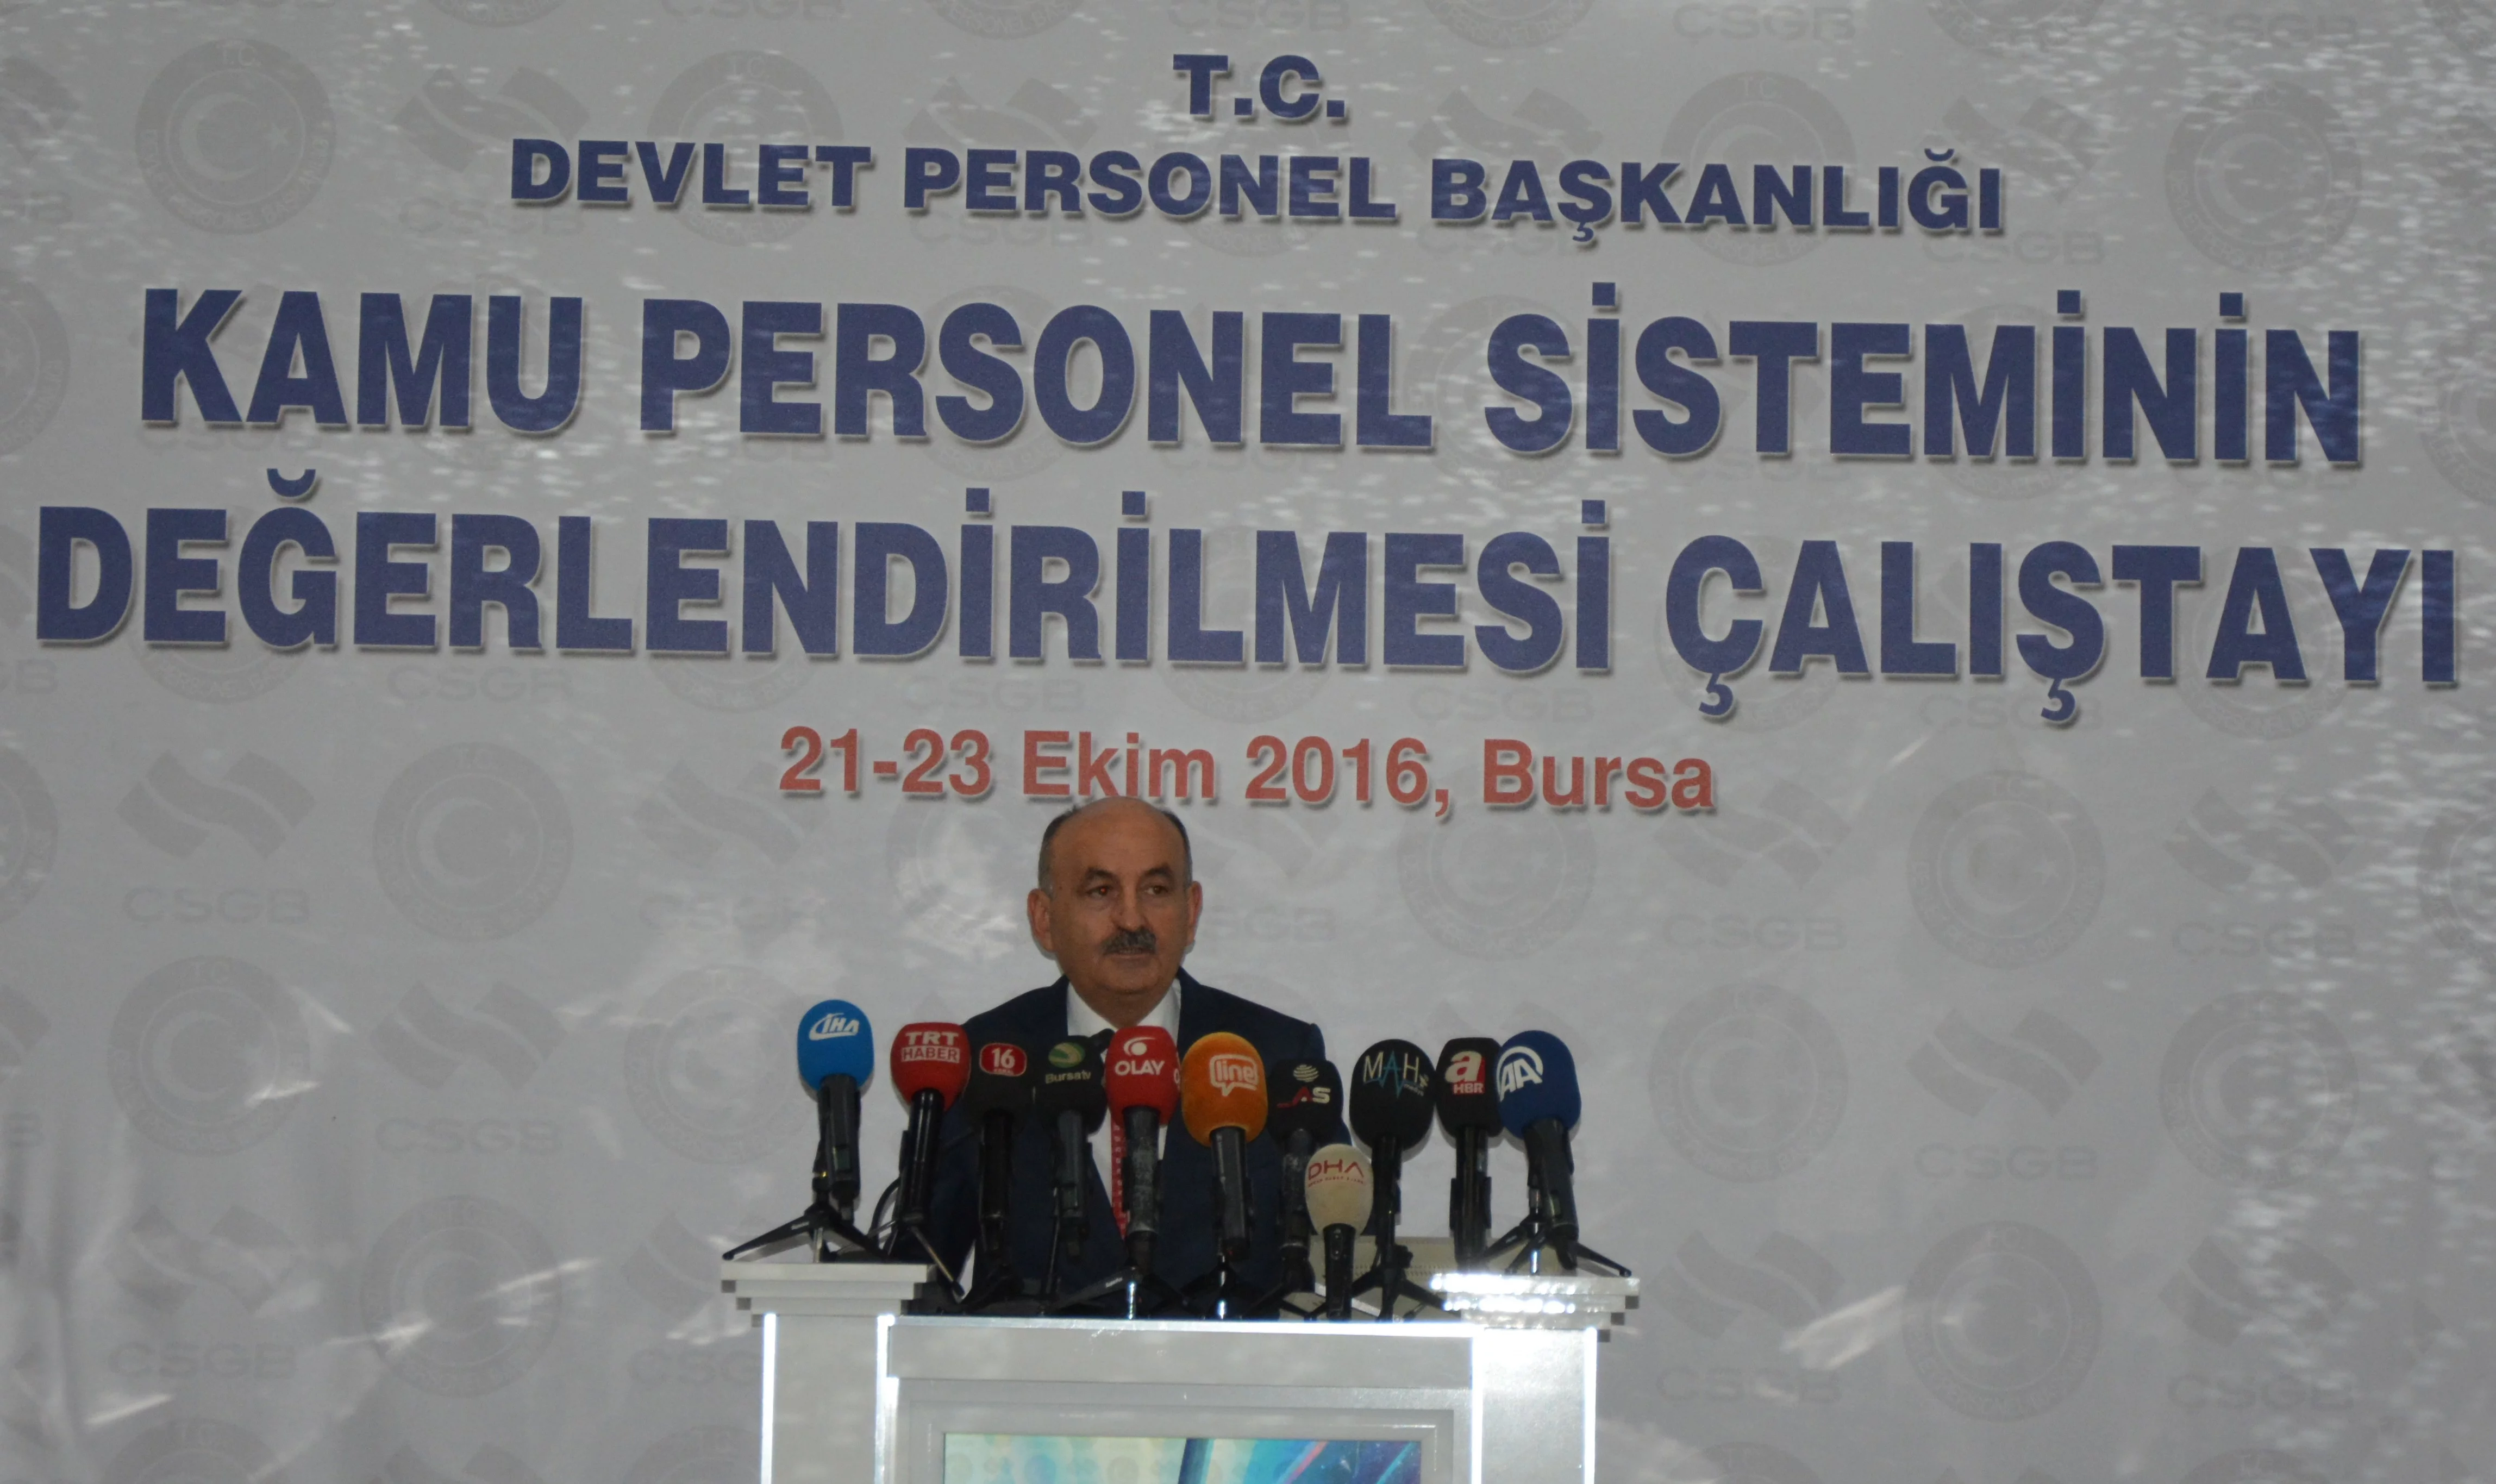 Müezzinoğlu:"15 Temmuz'daki Türkiye'nin kamusal yapısı tarihin karanlık sayfalarında görülmeli"